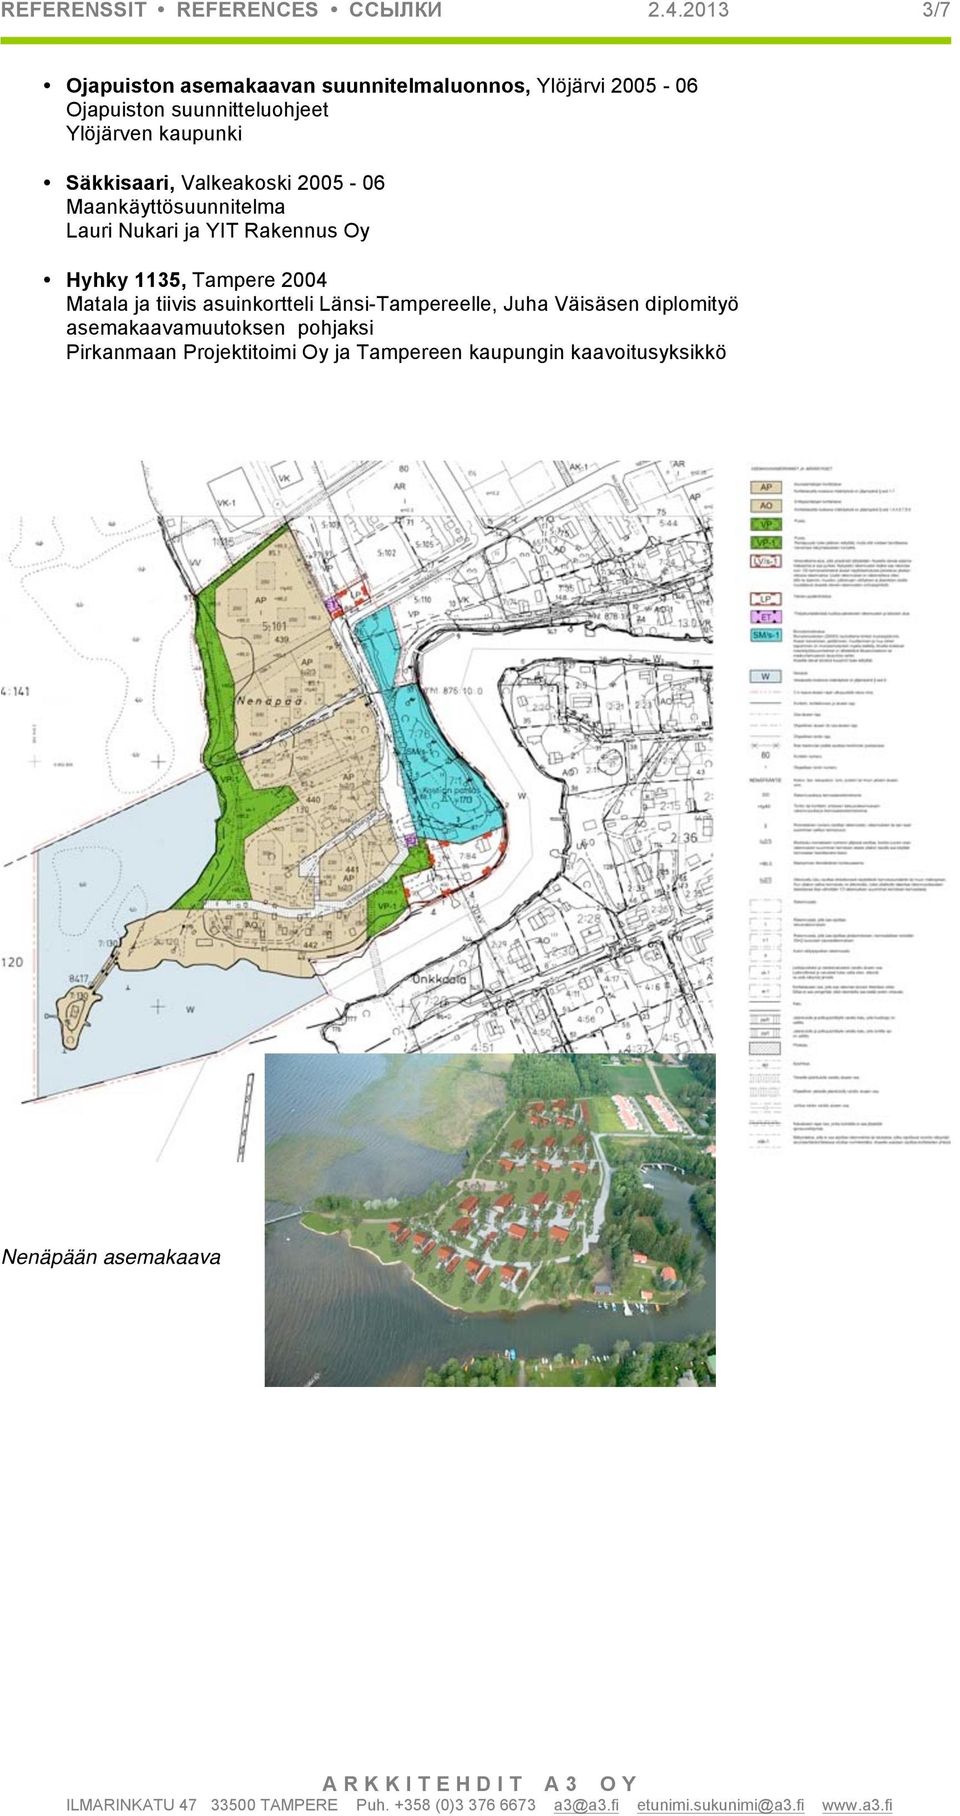 kaupunki Säkkisaari, Valkeakoski 2005-06 Maankäyttösuunnitelma Lauri Nukari ja YIT Rakennus Oy Hyhky 1135,